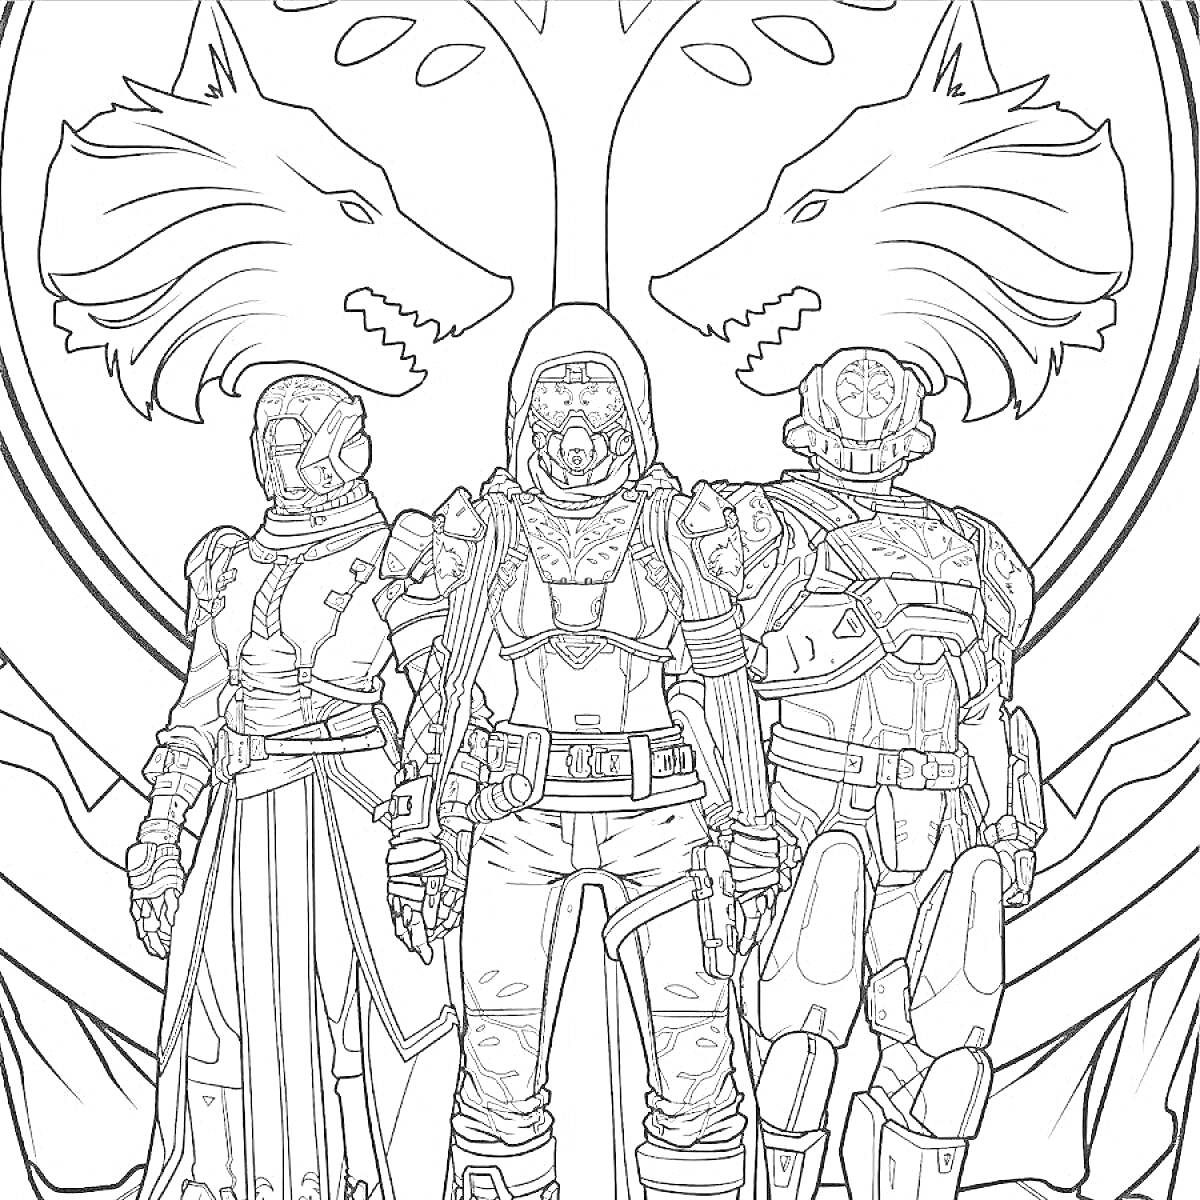 Трое стоящих персонажей в доспехах и капюшонах на фоне двух волчьих голов